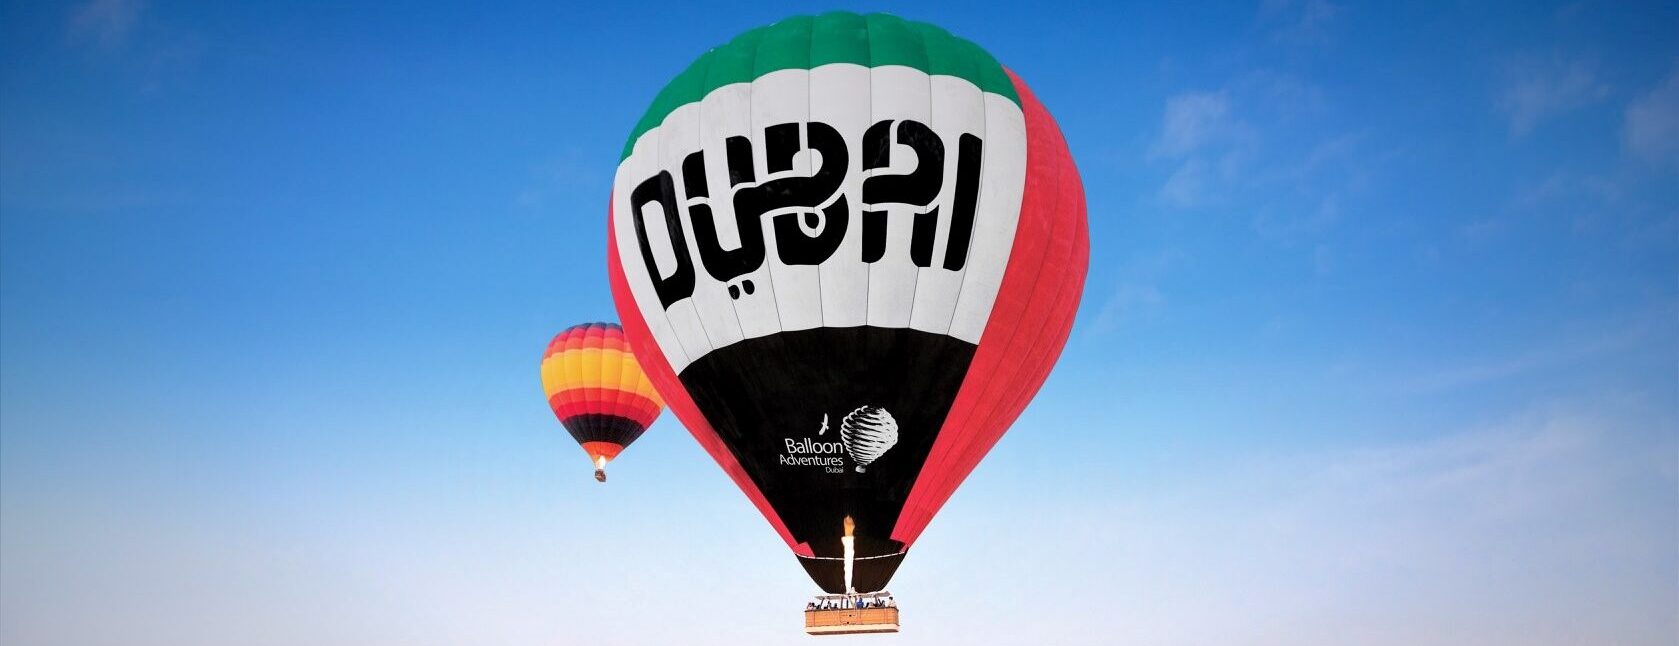 Hot-air-balloon